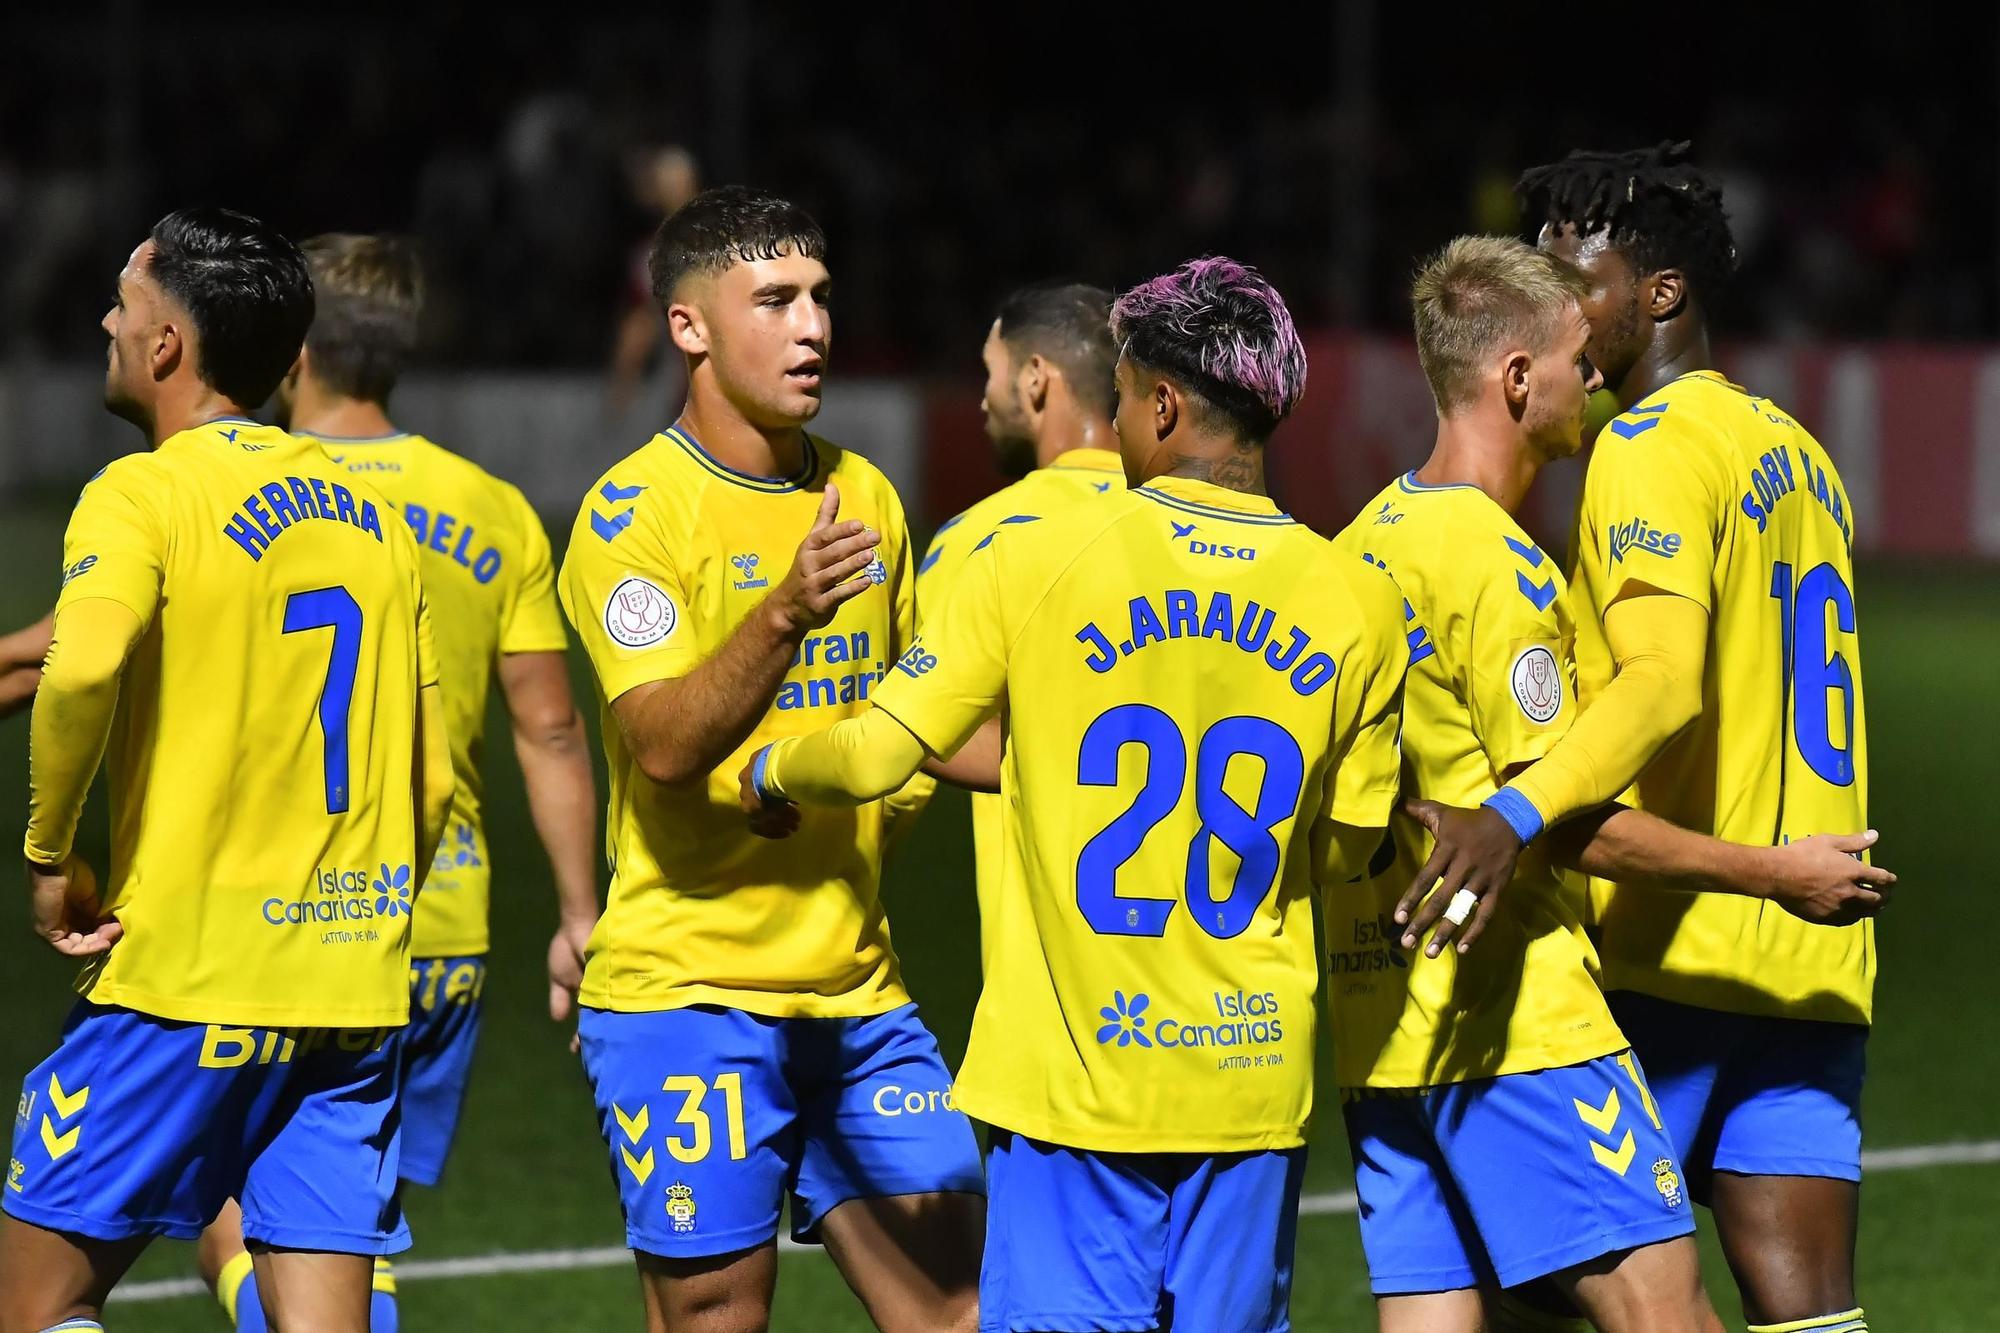 Copa del Rey: Manacor - UD Las Palmas